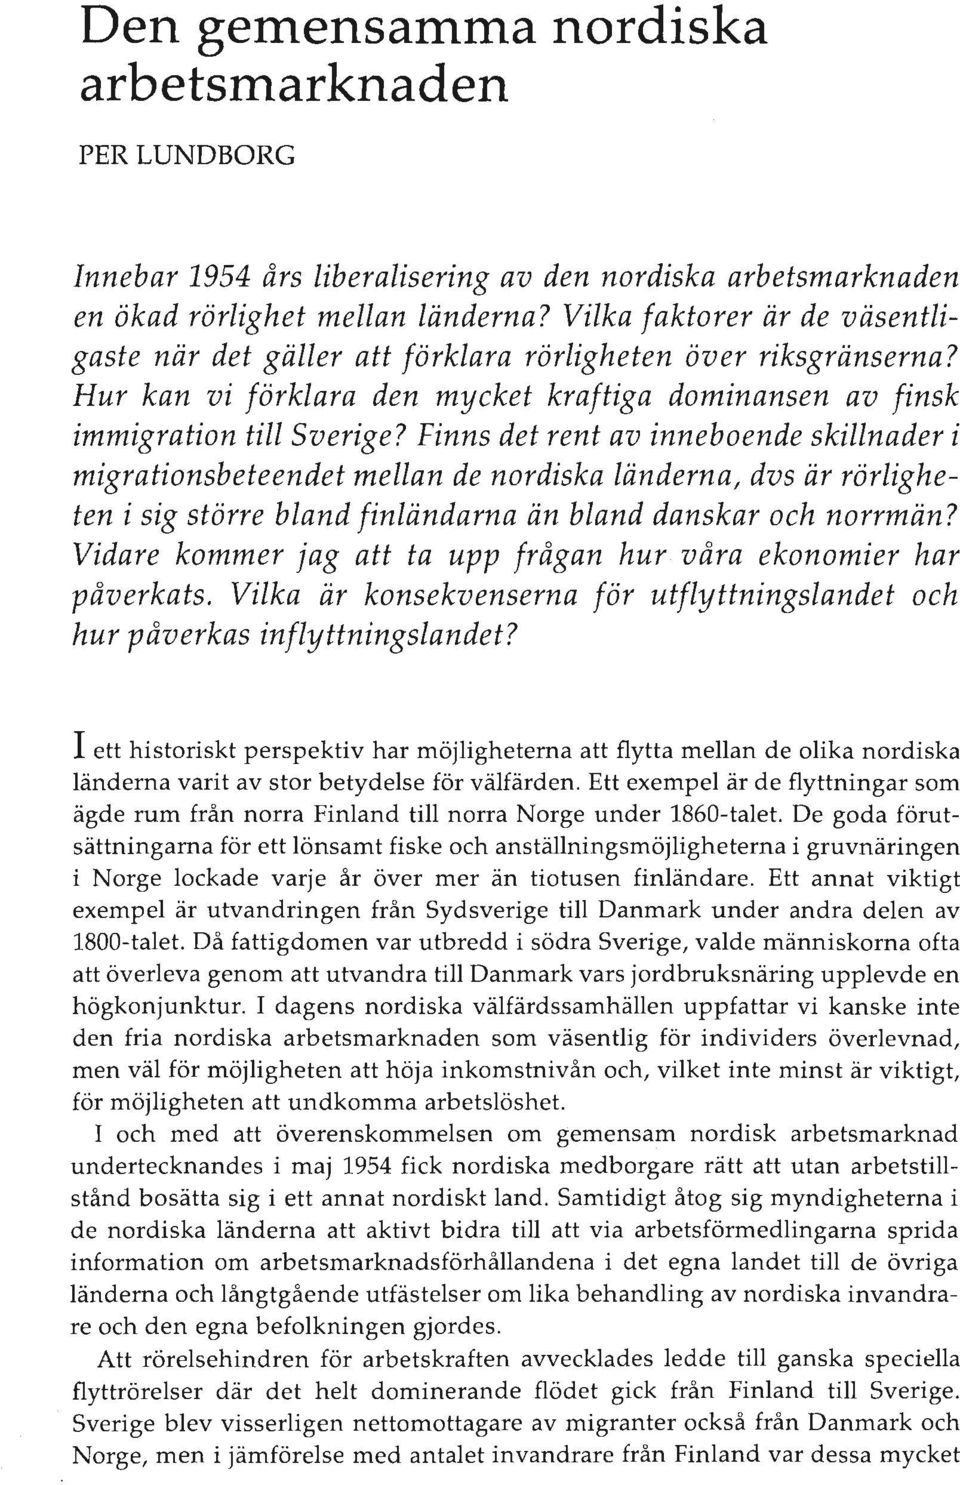 Finns det rent av inneboende skillnader i migrationsbeteendet mellan de nordiska länderna, dvs är rörligheten i sig större bland finländarna än bland danskar och norrmän?